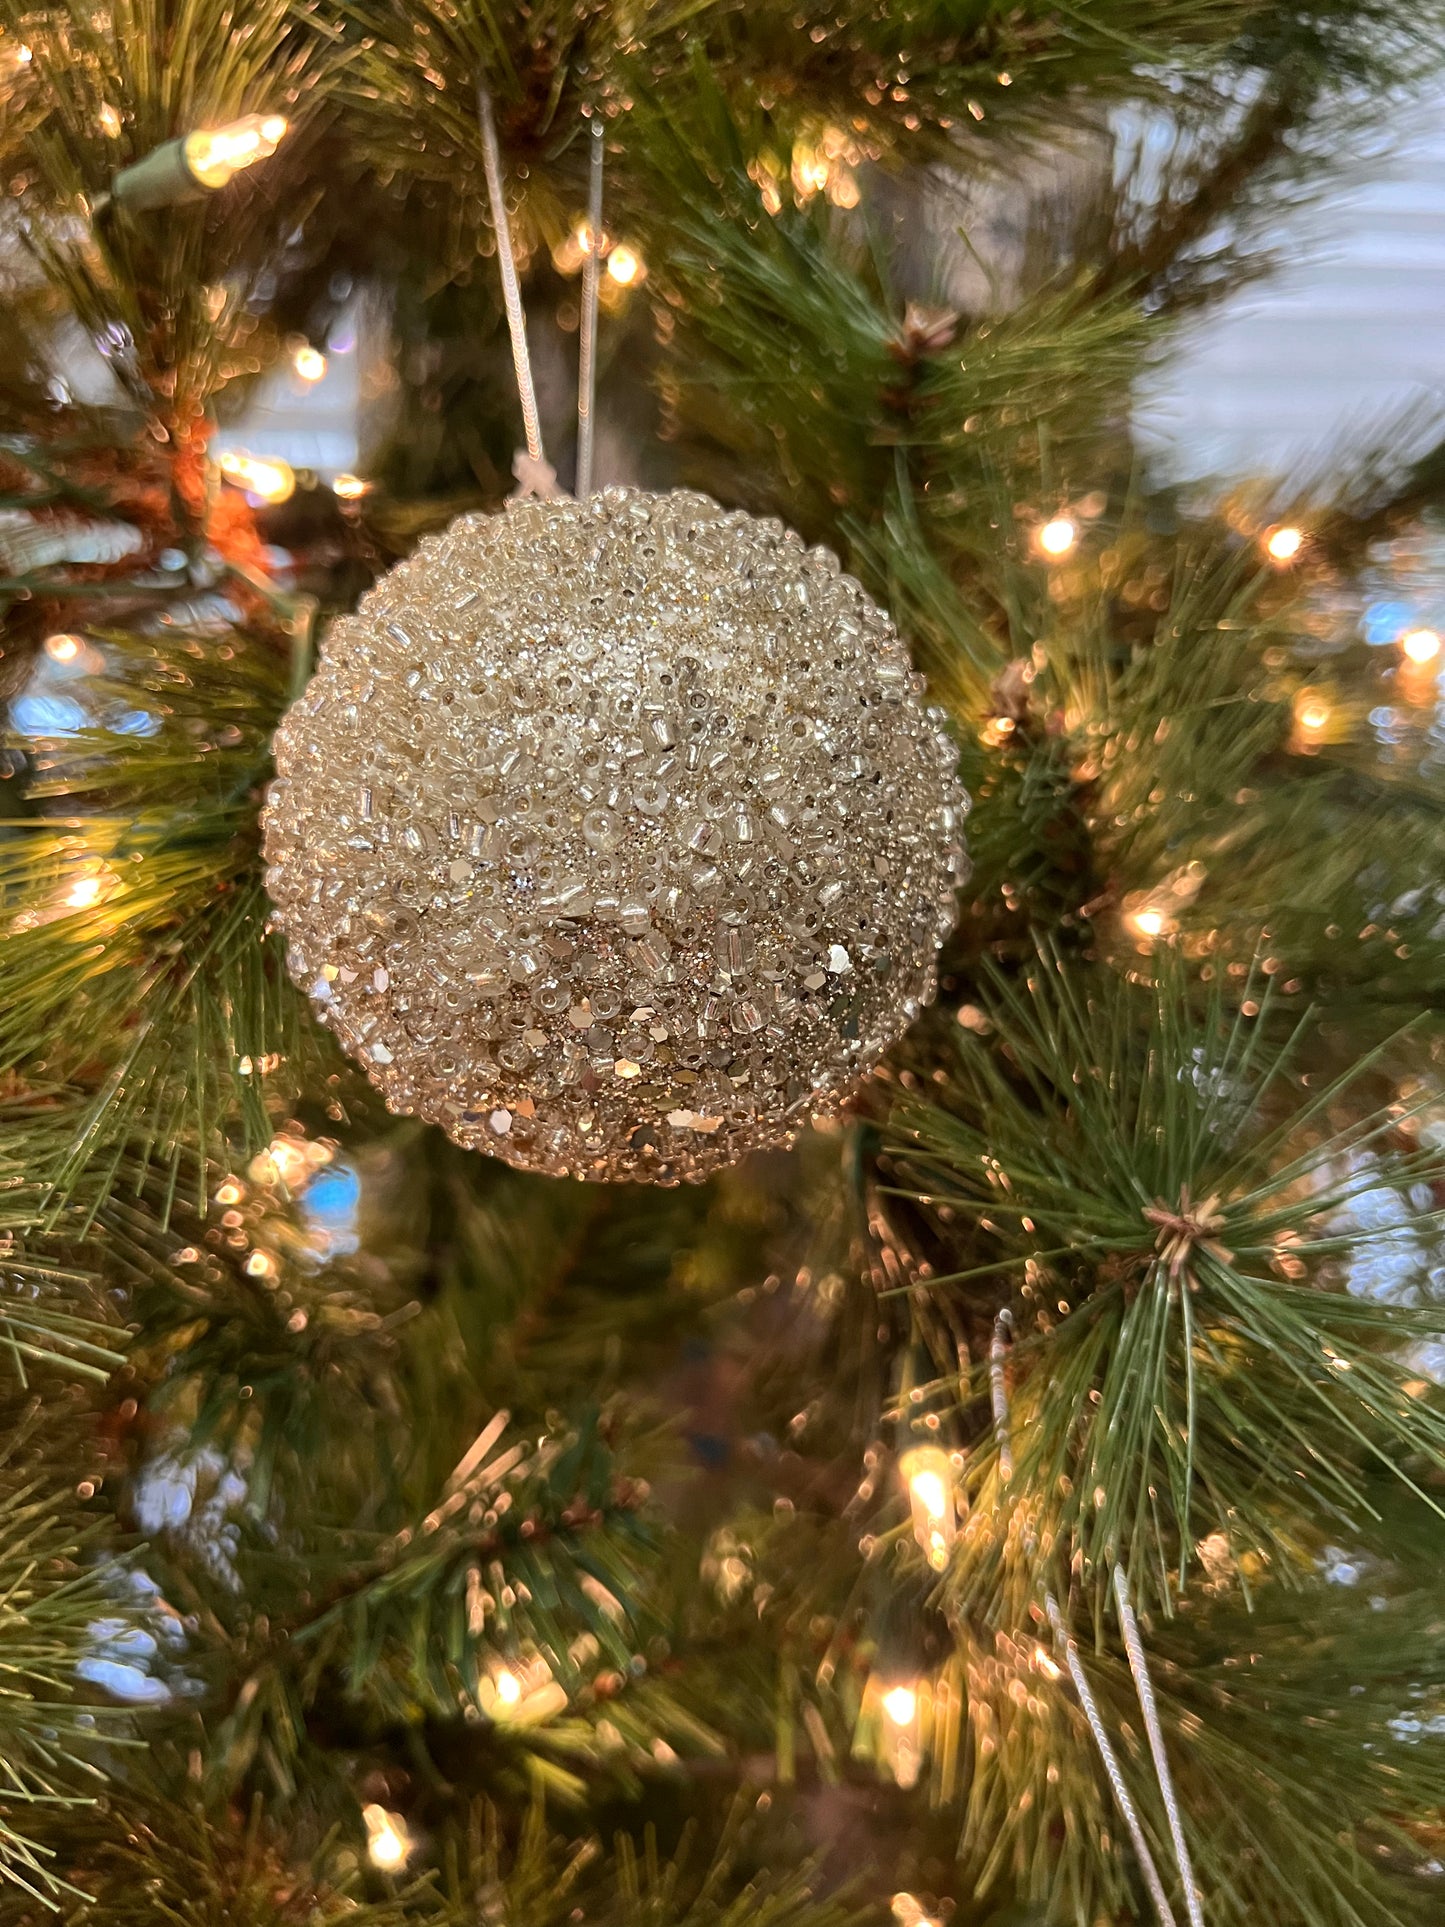 3" jewel ball holiday ornaments Christmas Decor